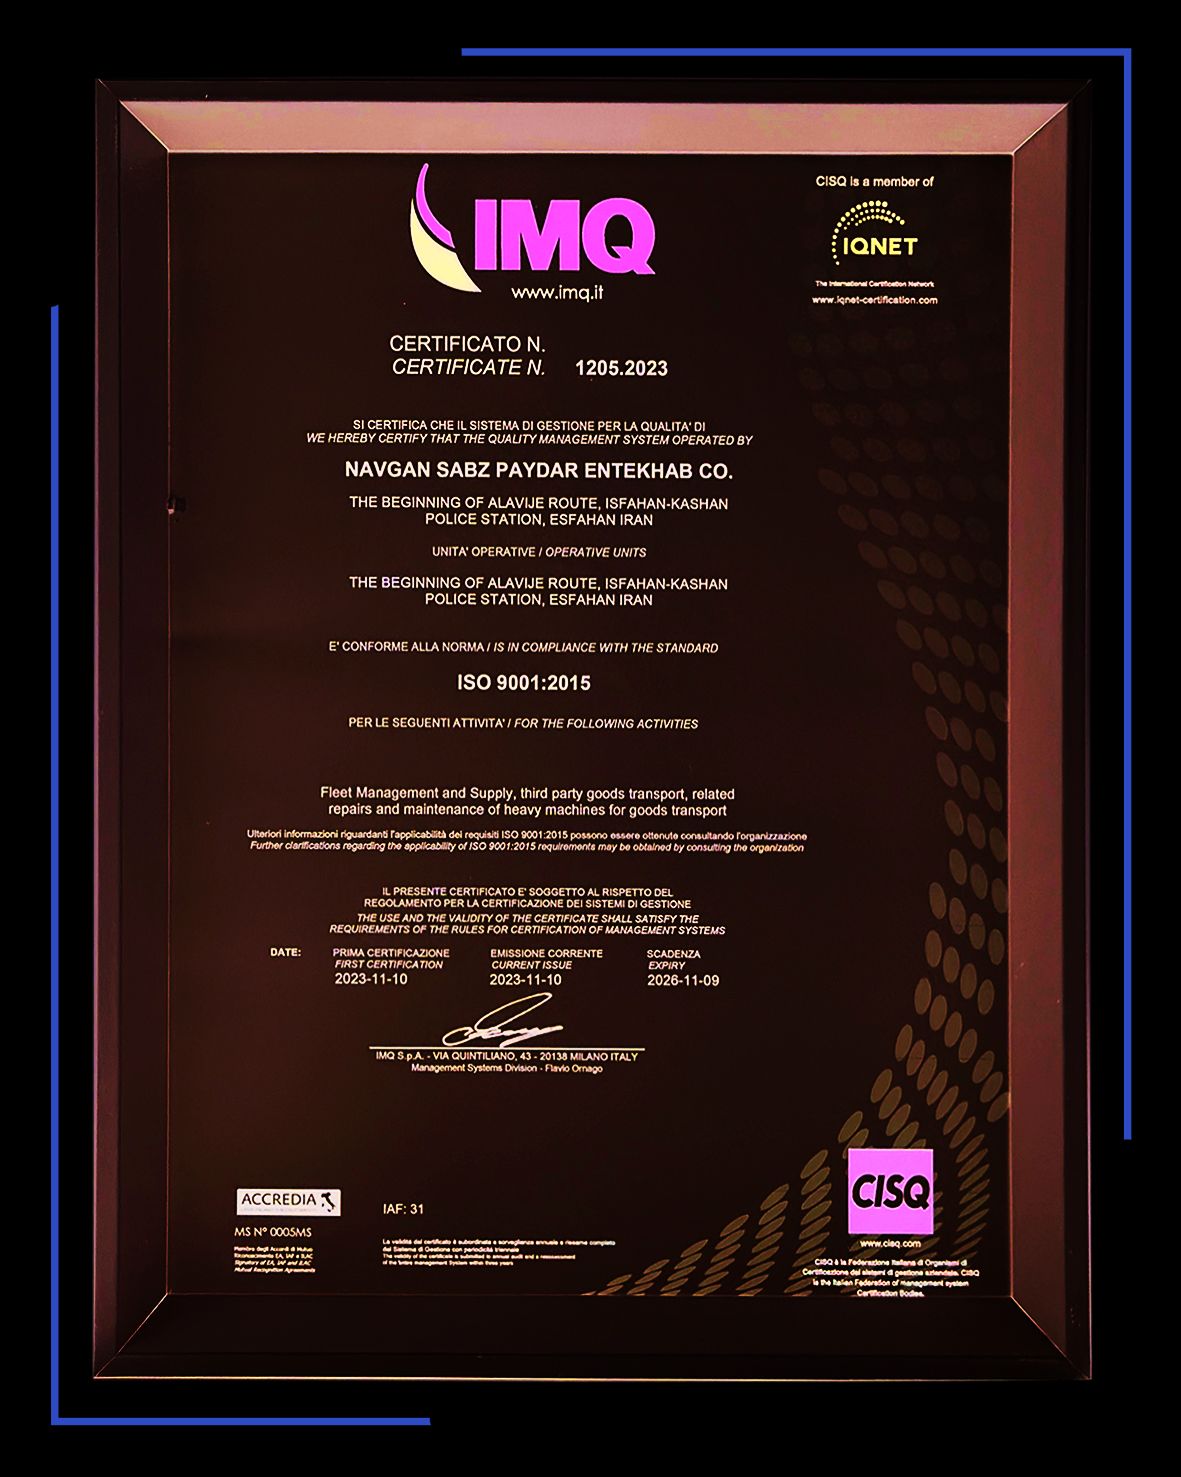 دریافت گواهینامه ISO 9001 با رویکرد کیفیت و بهبود از سوی هلدینگ دکا
